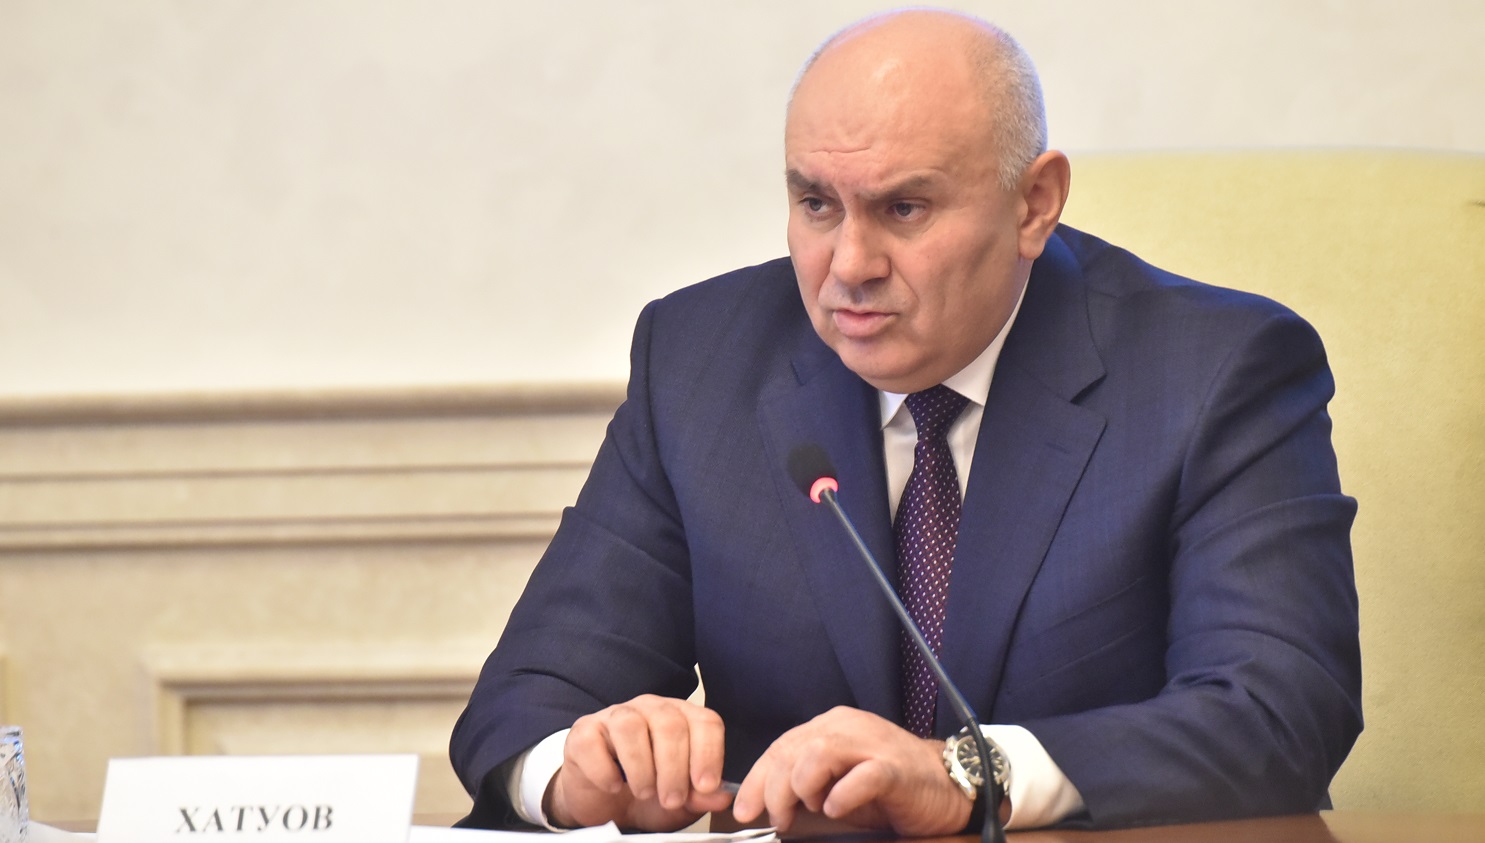 Первый замминистра сельского хозяйства РФ Джамбулат Хатуов сообщил, что через месяц будет проведено повторное заседание по решению данных вопросов